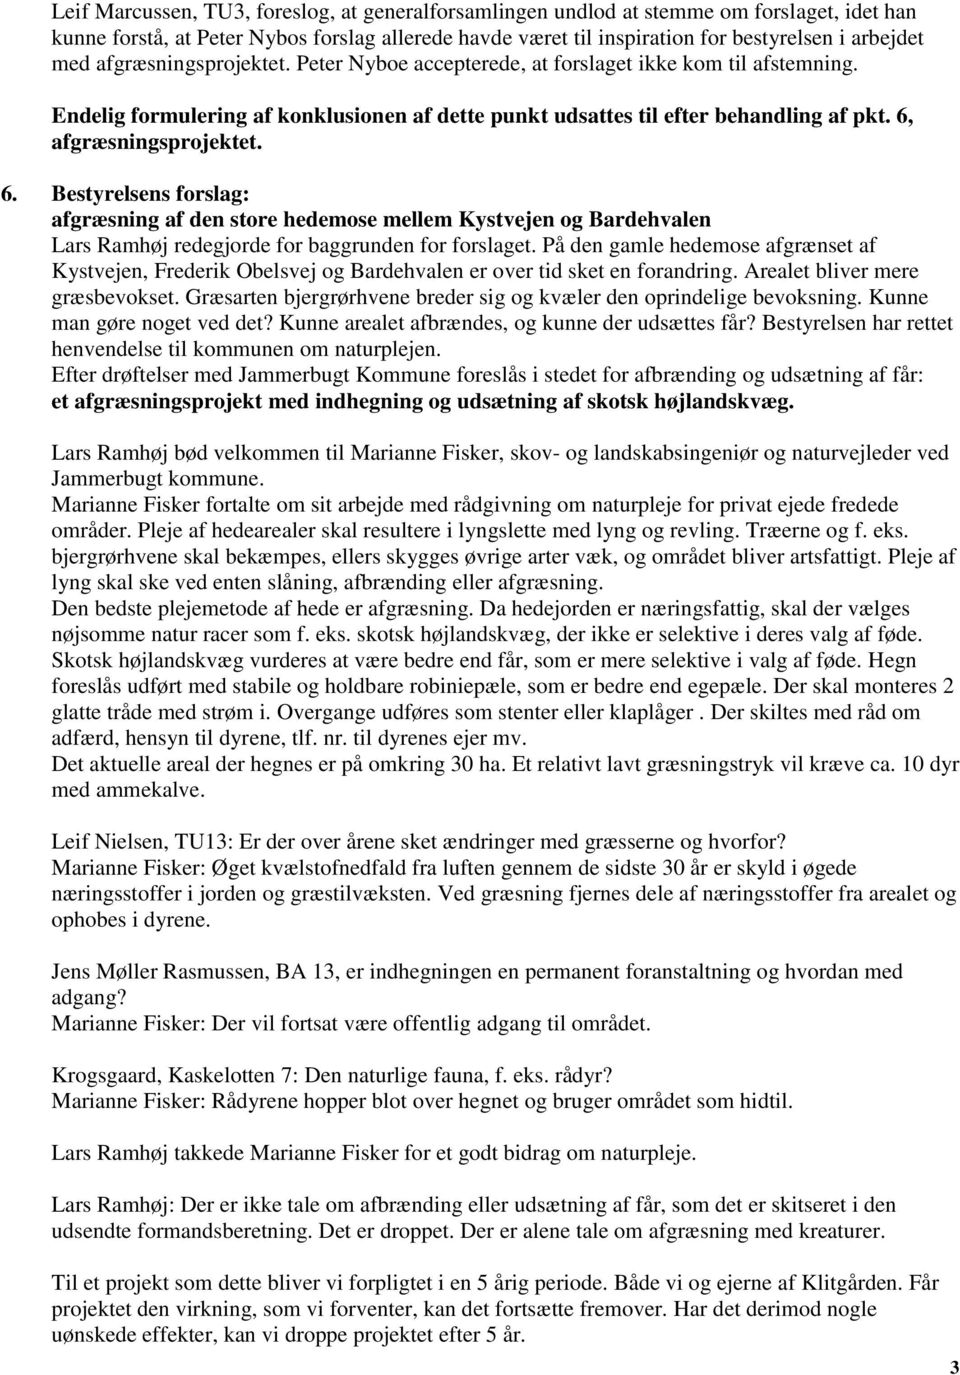 6. Bestyrelsens forslag: afgræsning af den store hedemose mellem Kystvejen og Bardehvalen Lars Ramhøj redegjorde for baggrunden for forslaget.